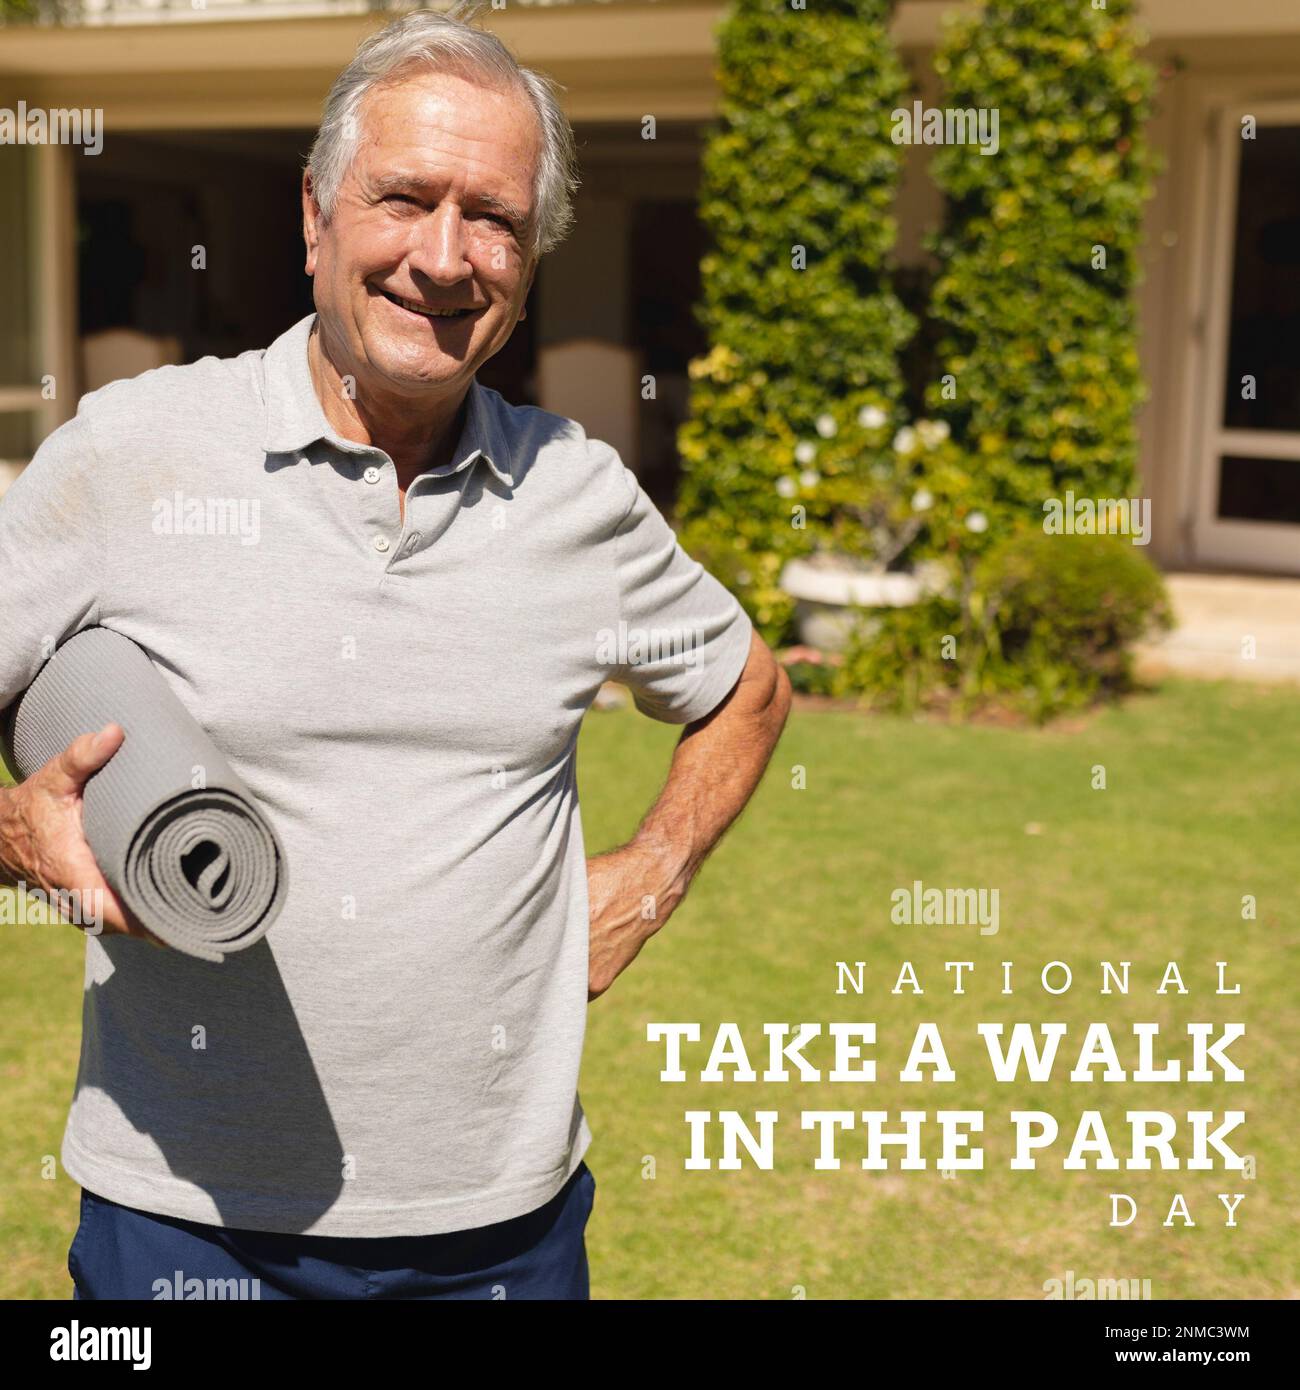 National Prenez une promenade dans le texte de jour de parc au-dessus de l'homme caucasien senior heureux avec tapis de yoga dans le jardin Banque D'Images